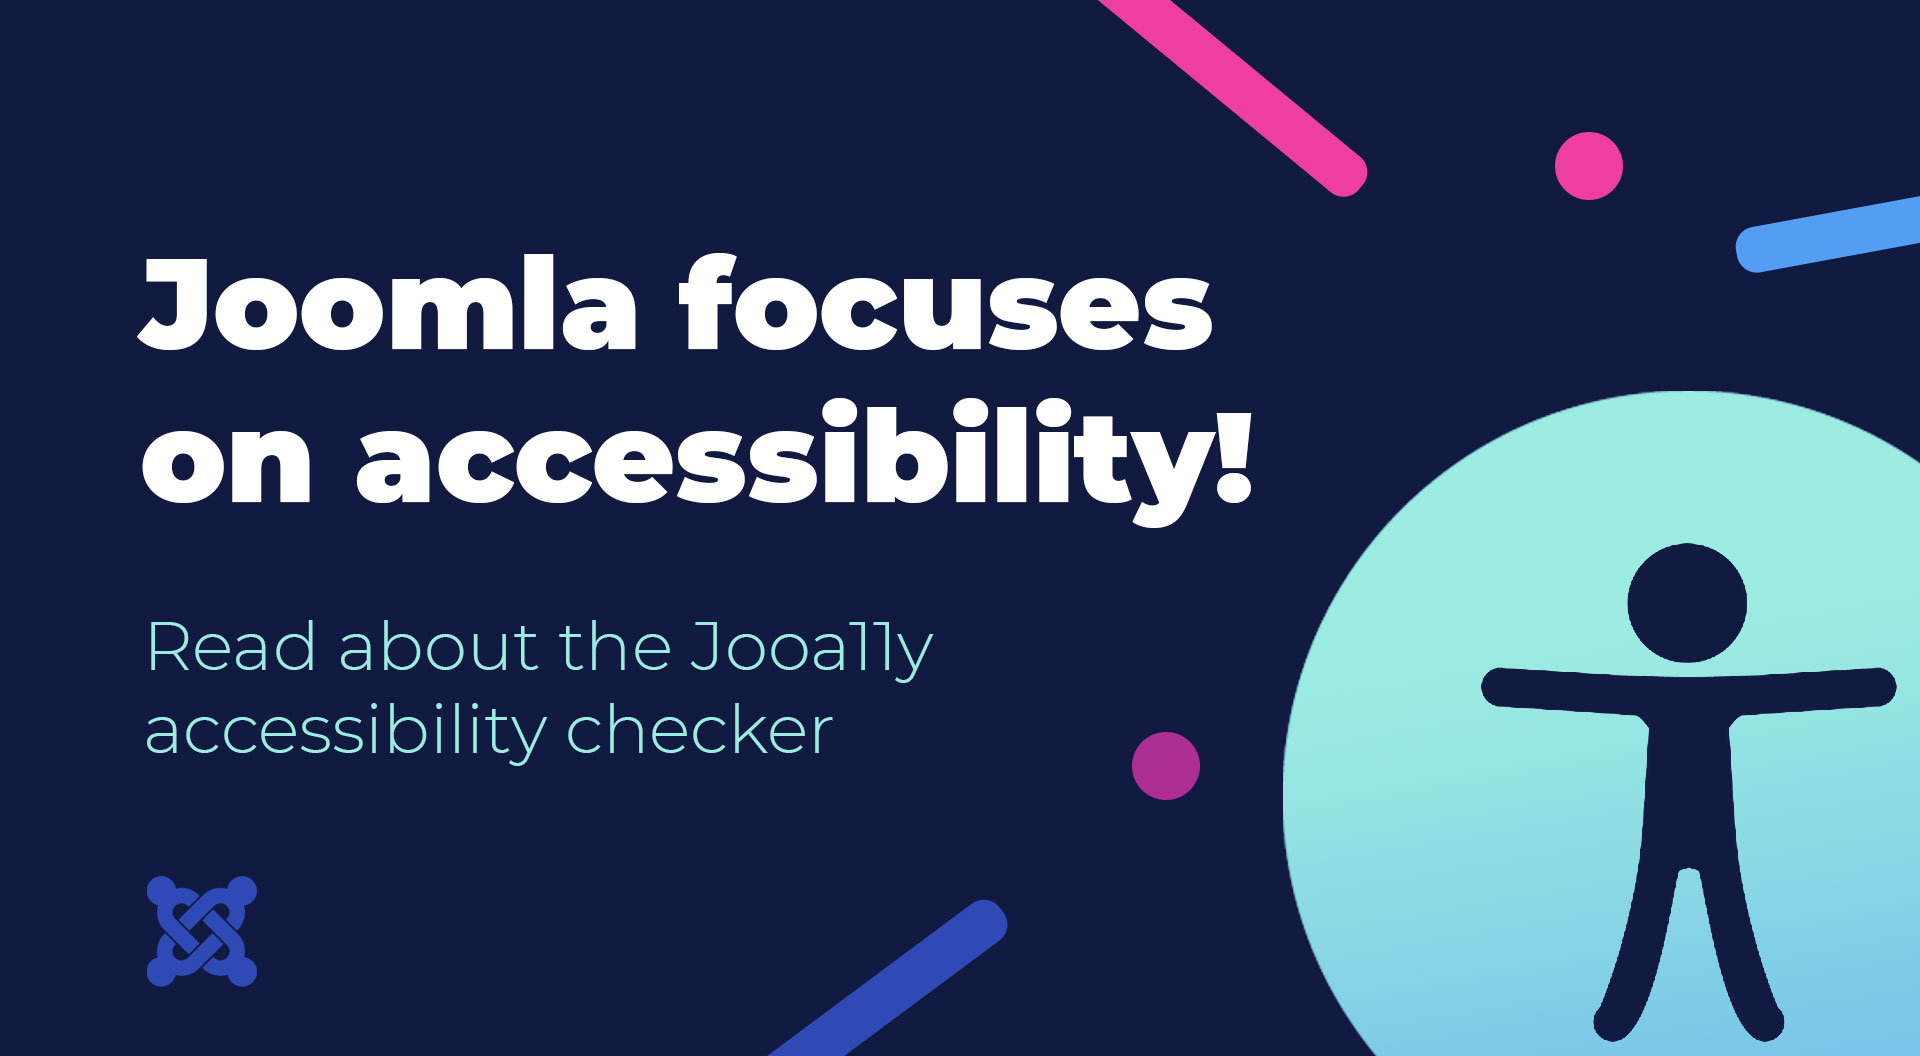 Joomla focuses on accessibility